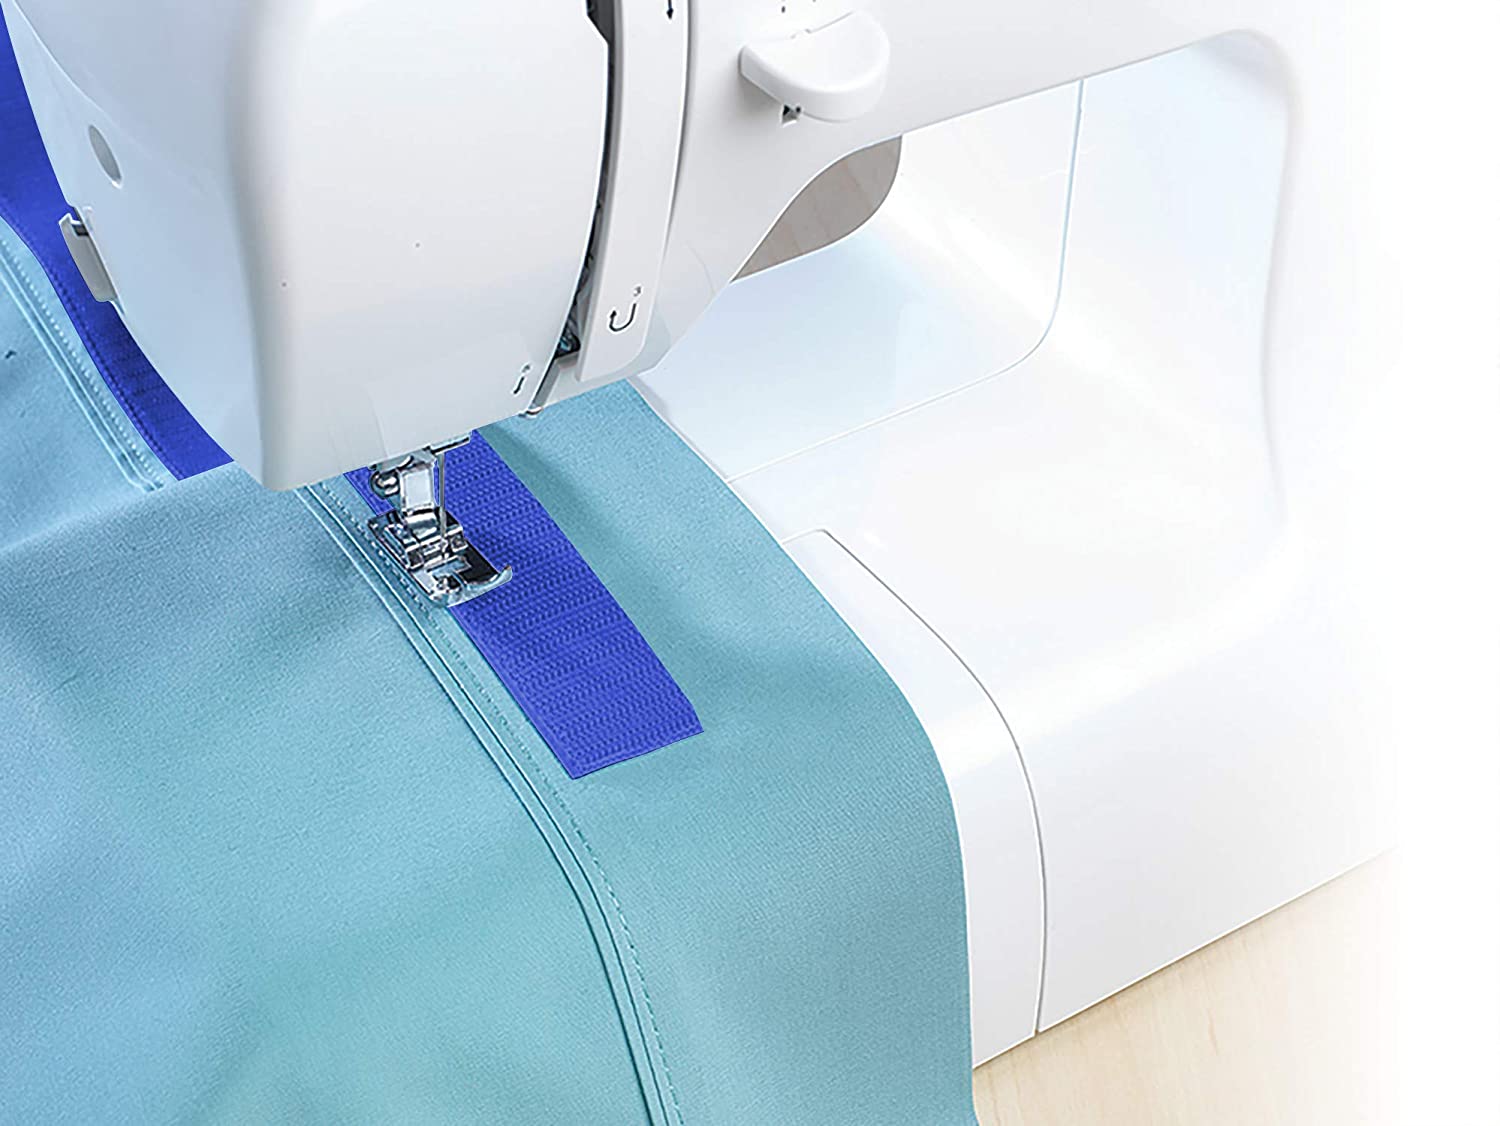 Cinta adhesiva de velcro para coser y coser, cinta adhesiva de tela de  nailon para coser cojines de fijación, 5 yardas/par